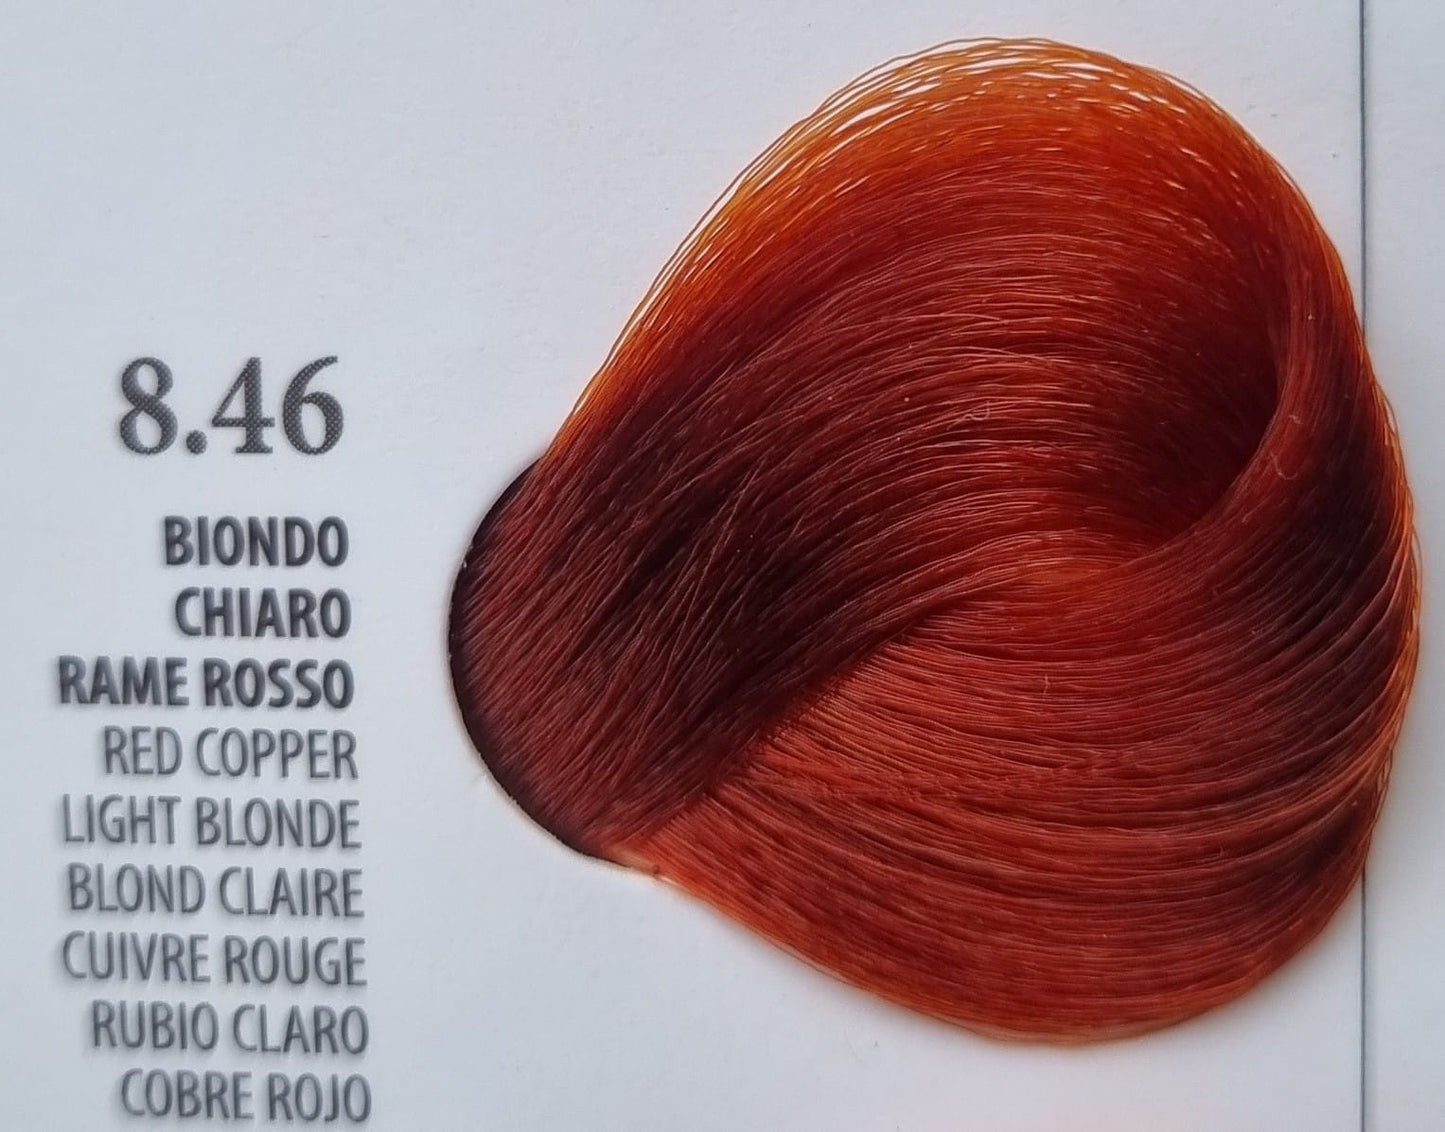 Vopsea Rapida 10 minute XHENSIL ITALIA - Blond Deschis Cupru Rosu 8.46